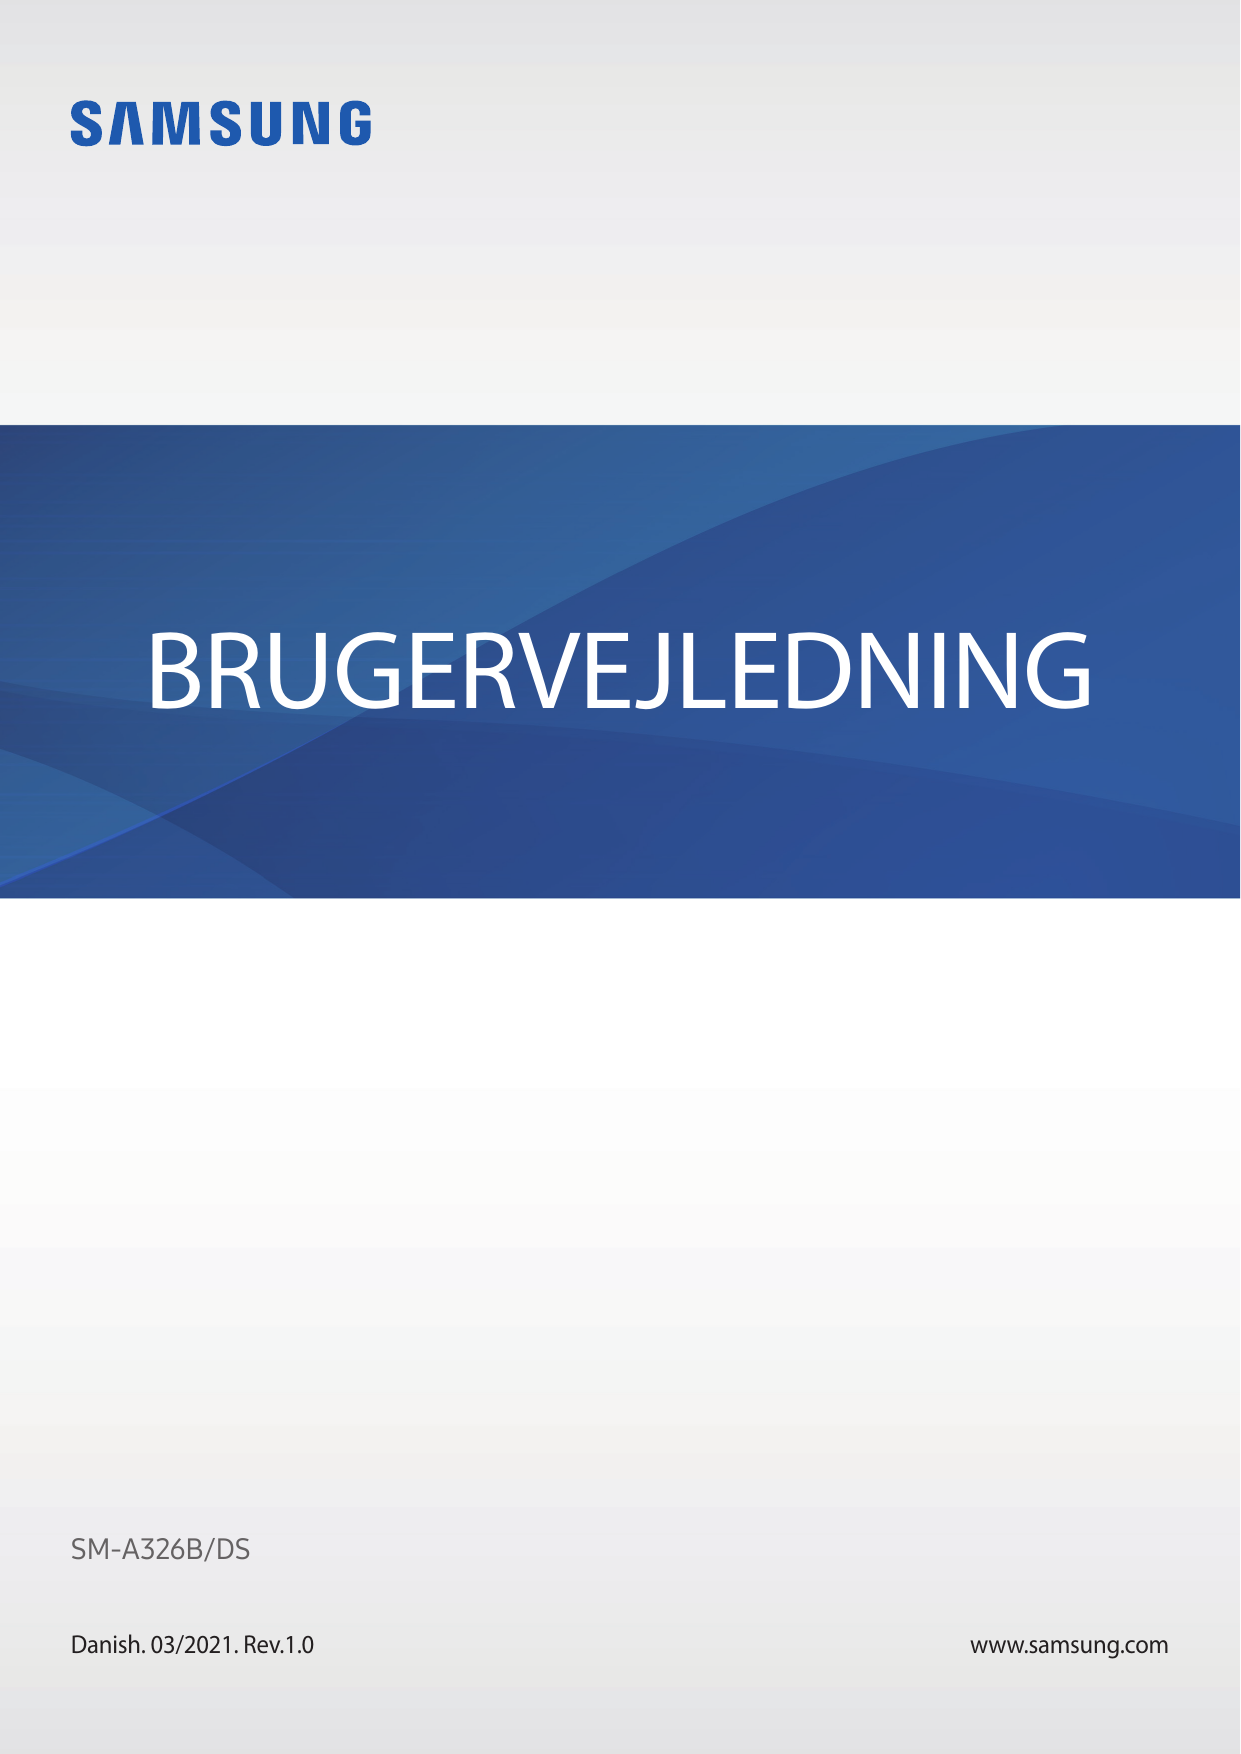 BRUGERVEJLEDNINGSM-A326B/DSDanish. 03/2021. Rev.1.0www.samsung.com